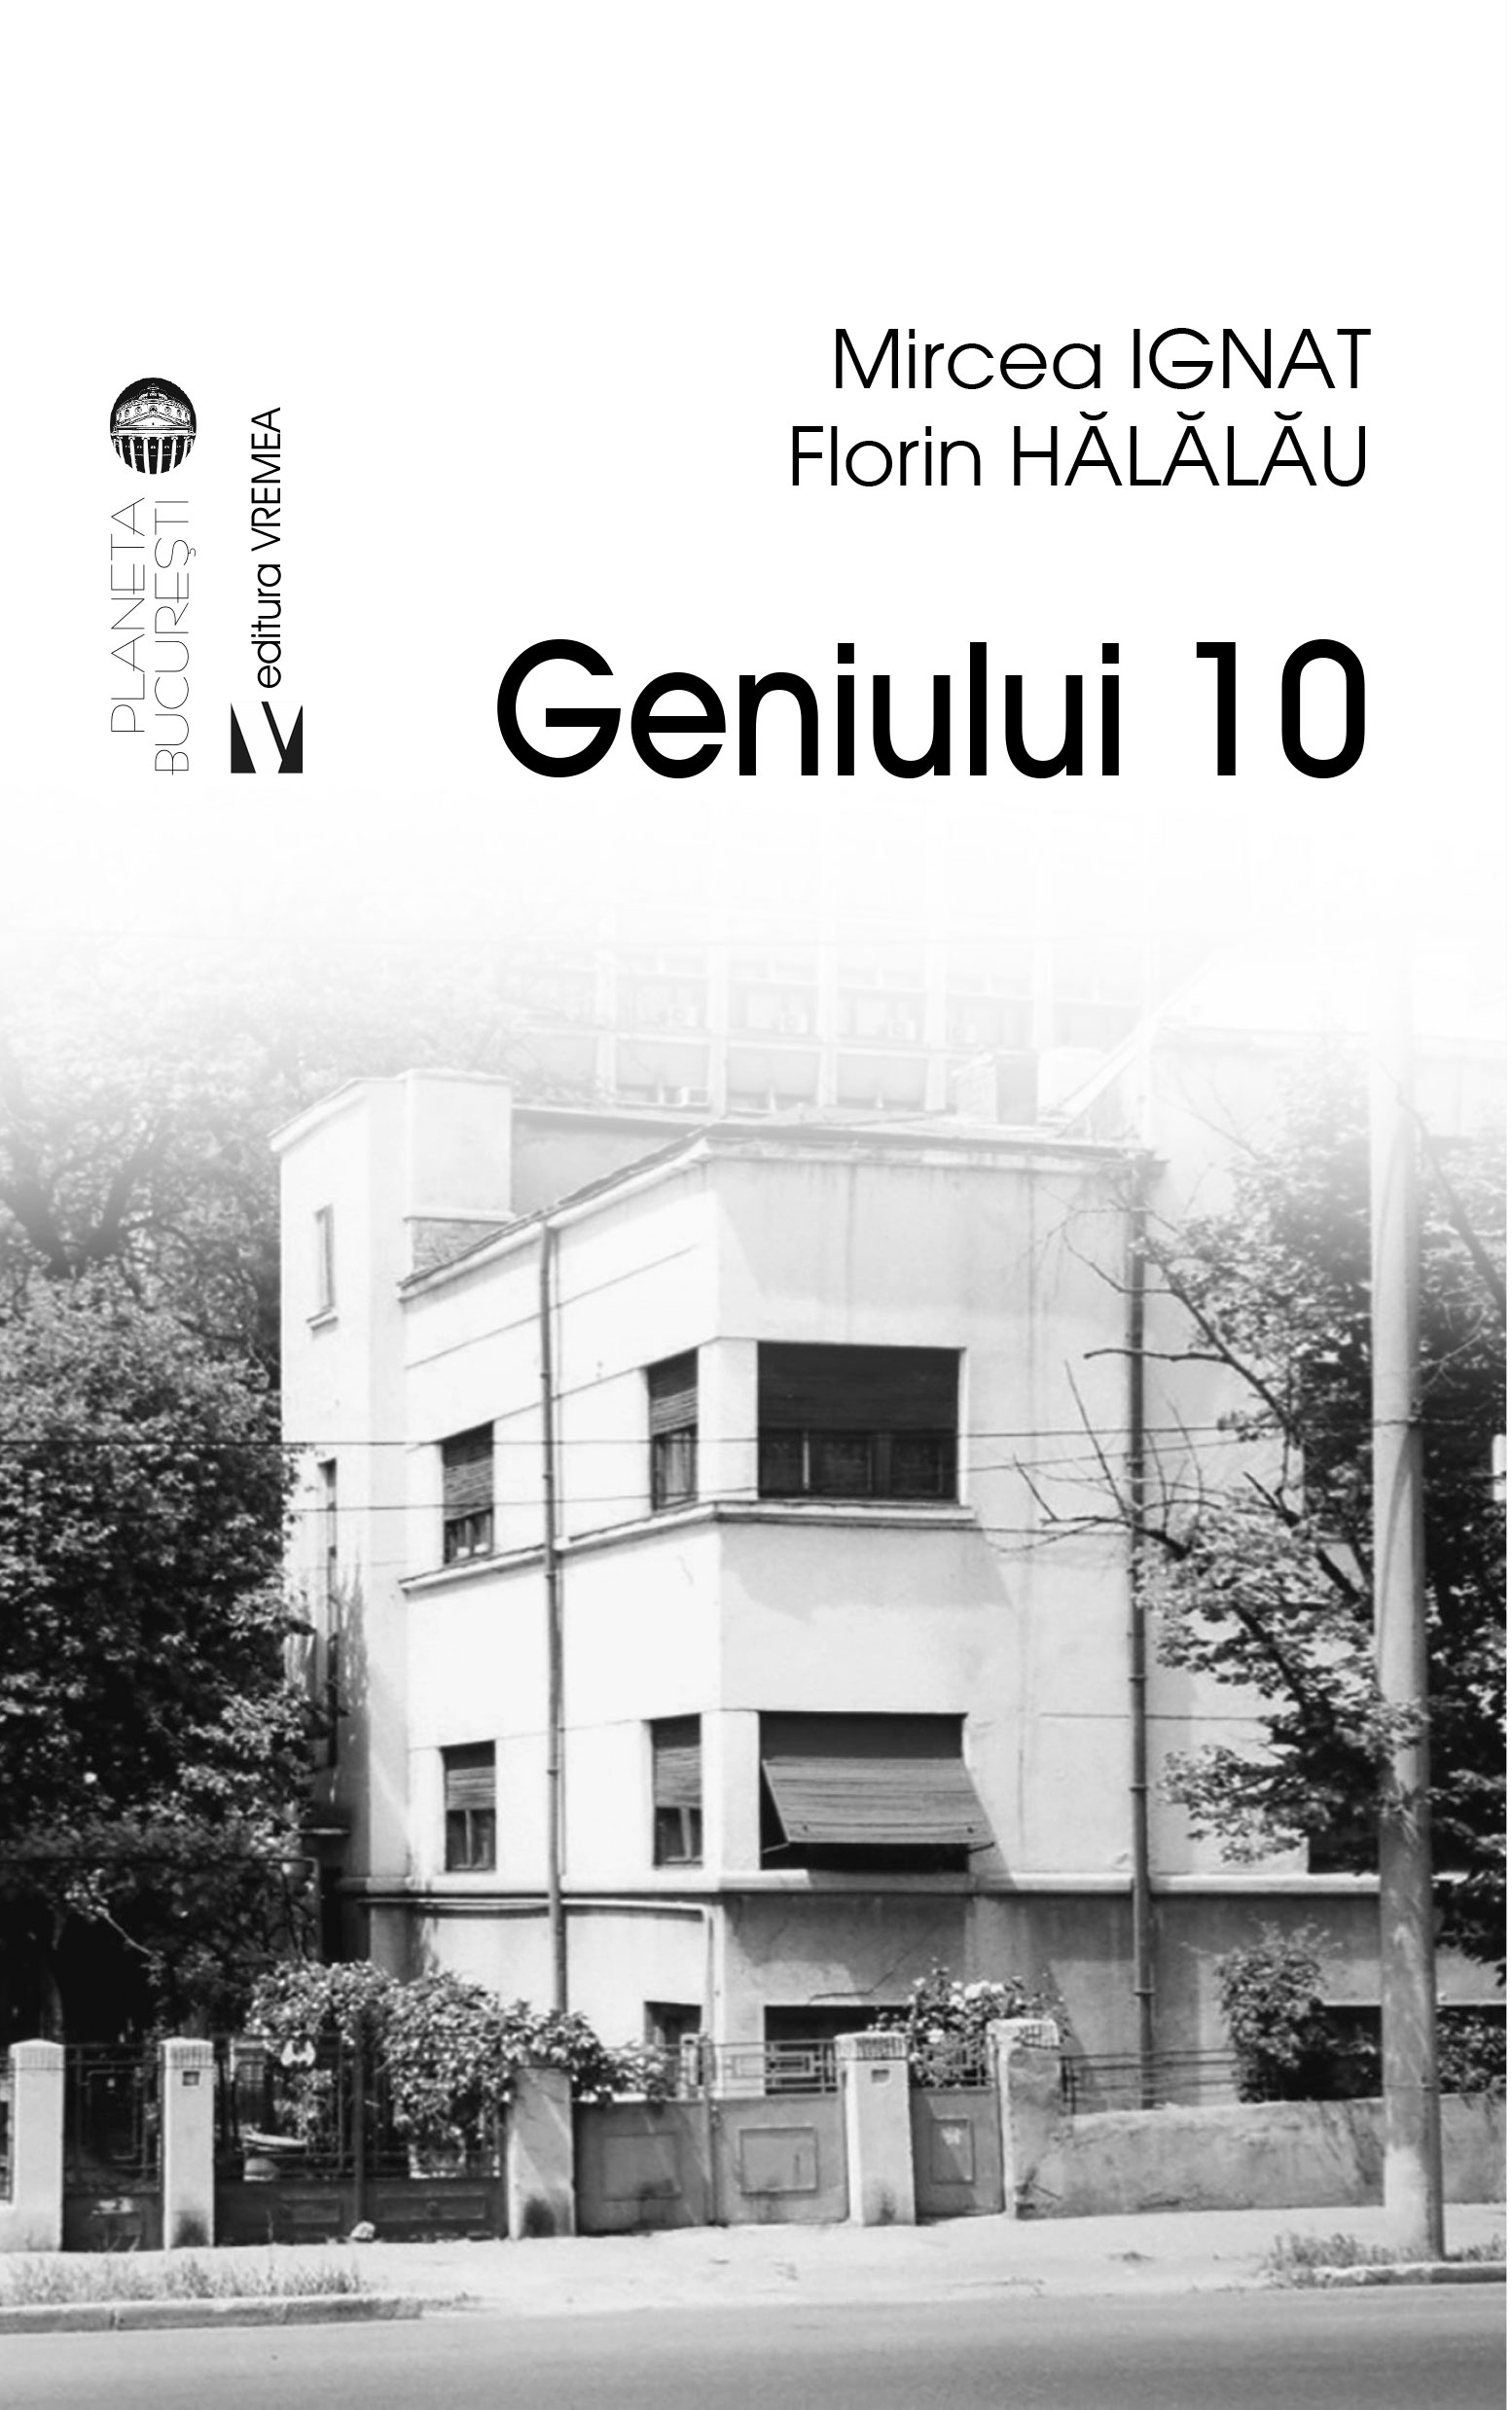 Geniul 10 | Mircea Ignat, Florin Halalau carturesti.ro